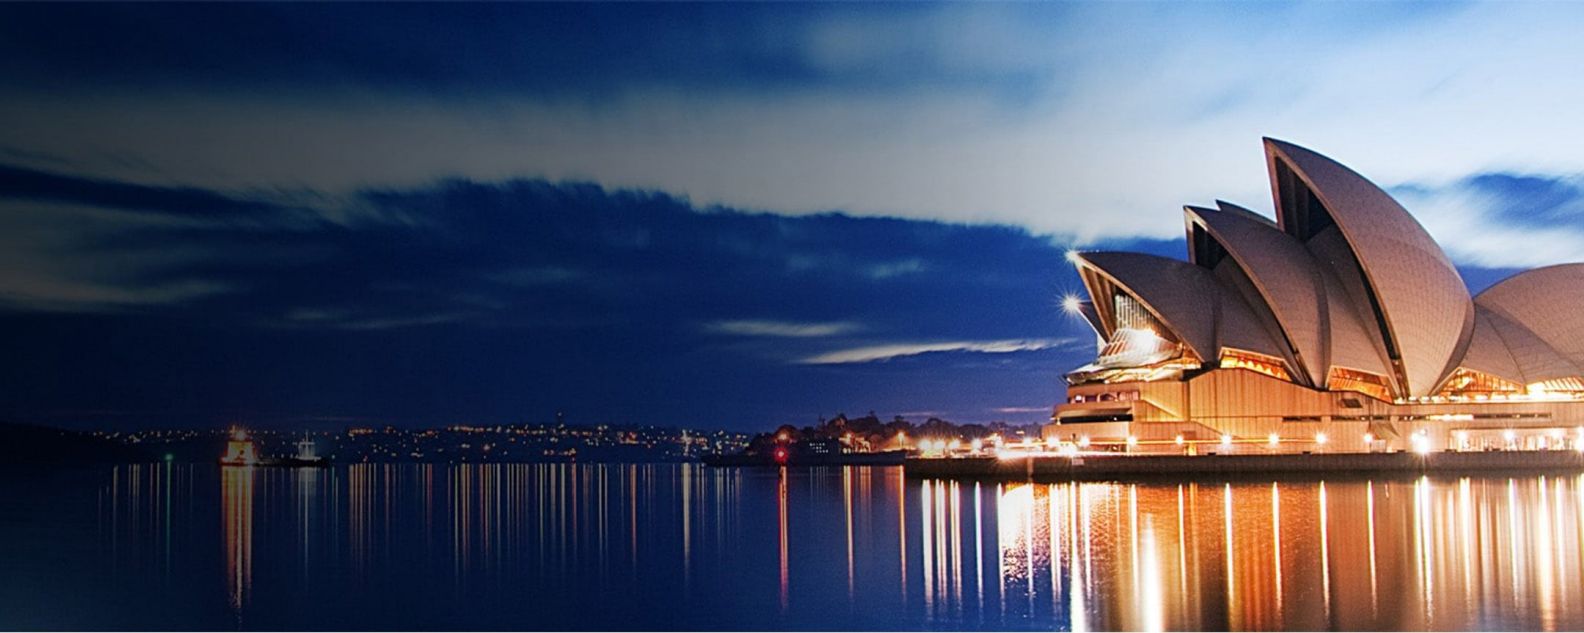 ライトアップされたシドニー・オペラハウスの夜景